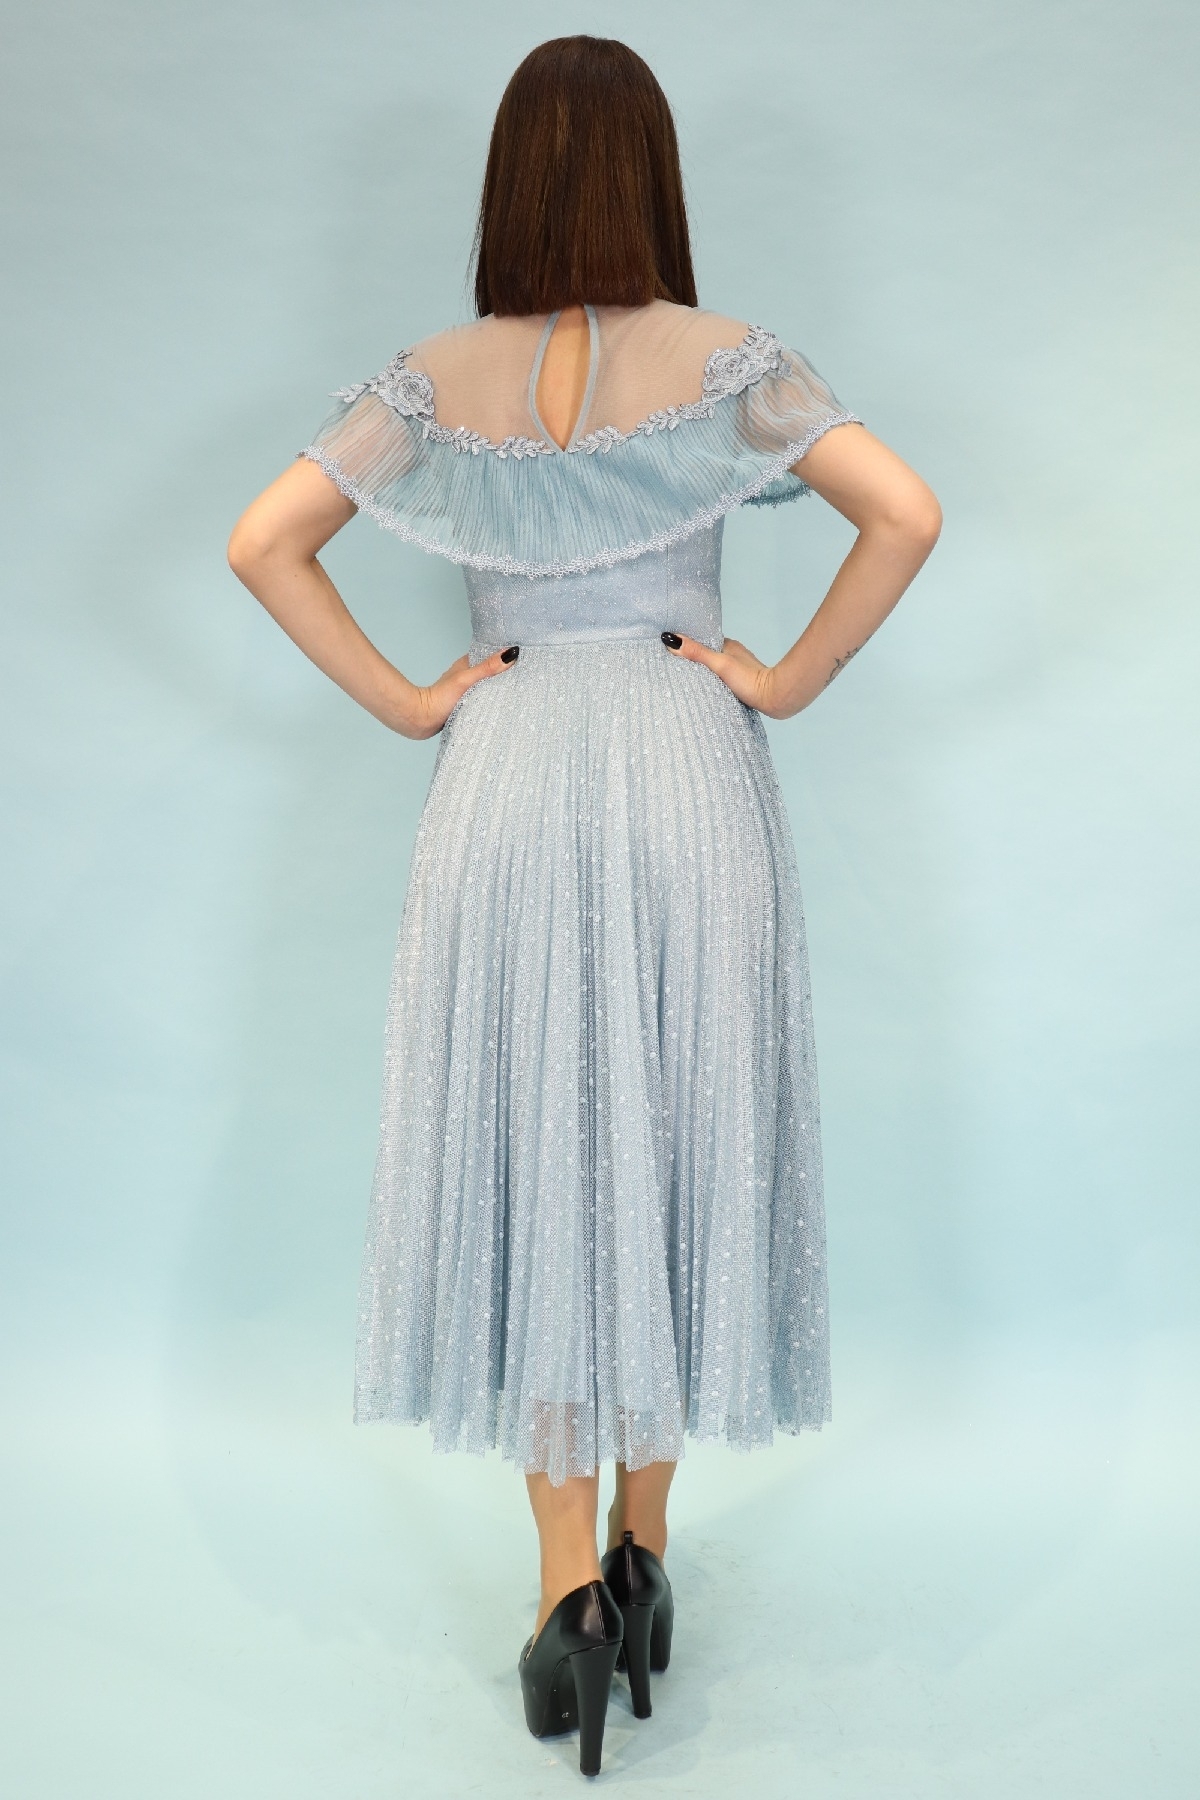 belden oturan omuz ve göğsü motif işlemeli kısa kollu midi boy çift kumaşlı zarif bayan elbise 